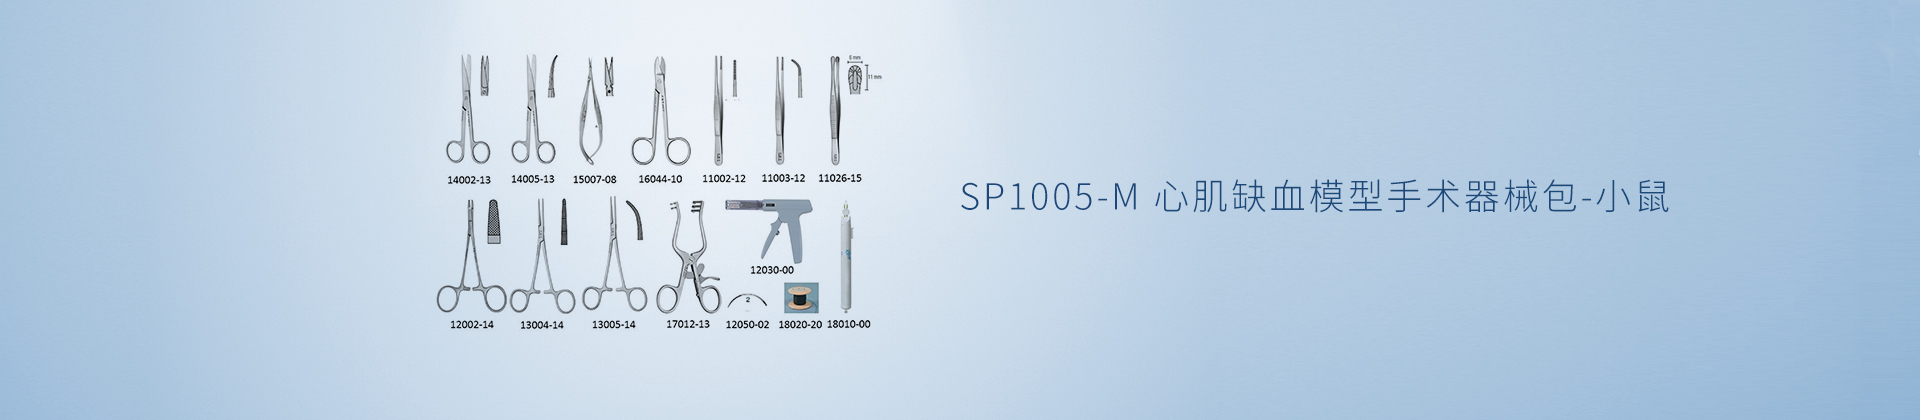 SP1005-M 心肌缺血模型手术器械包-小鼠